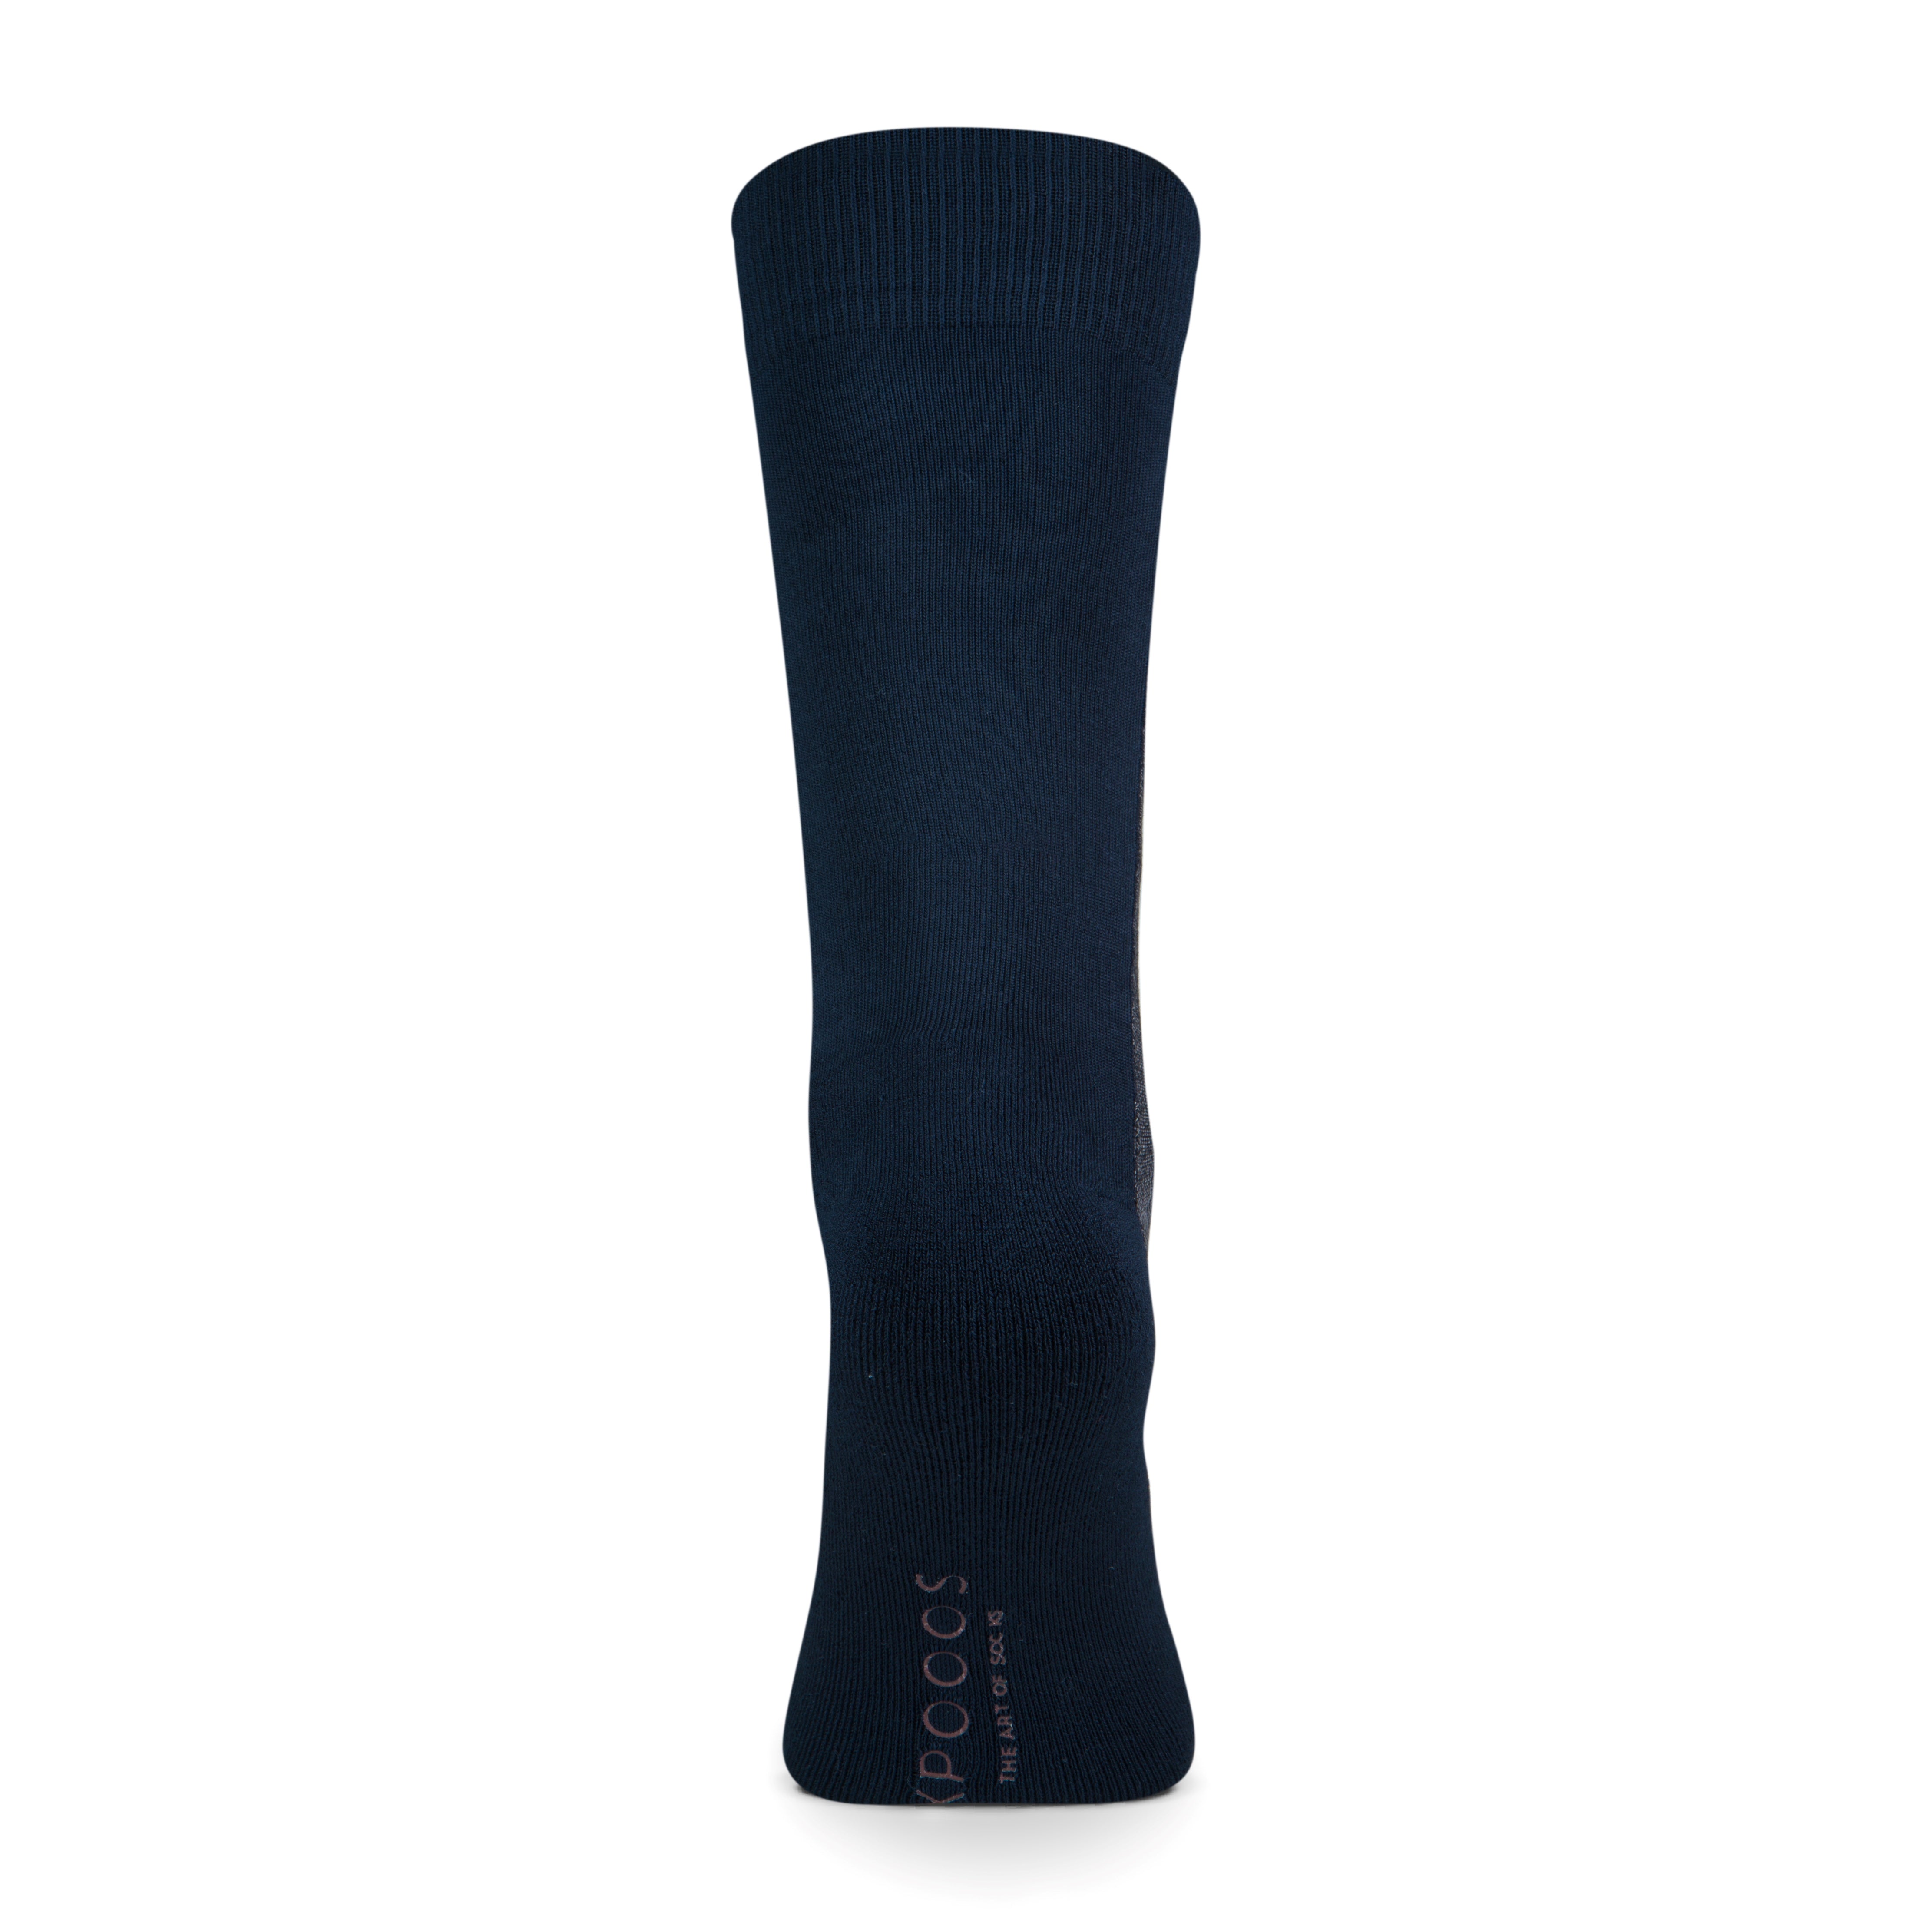 New York men's socks Anthracite